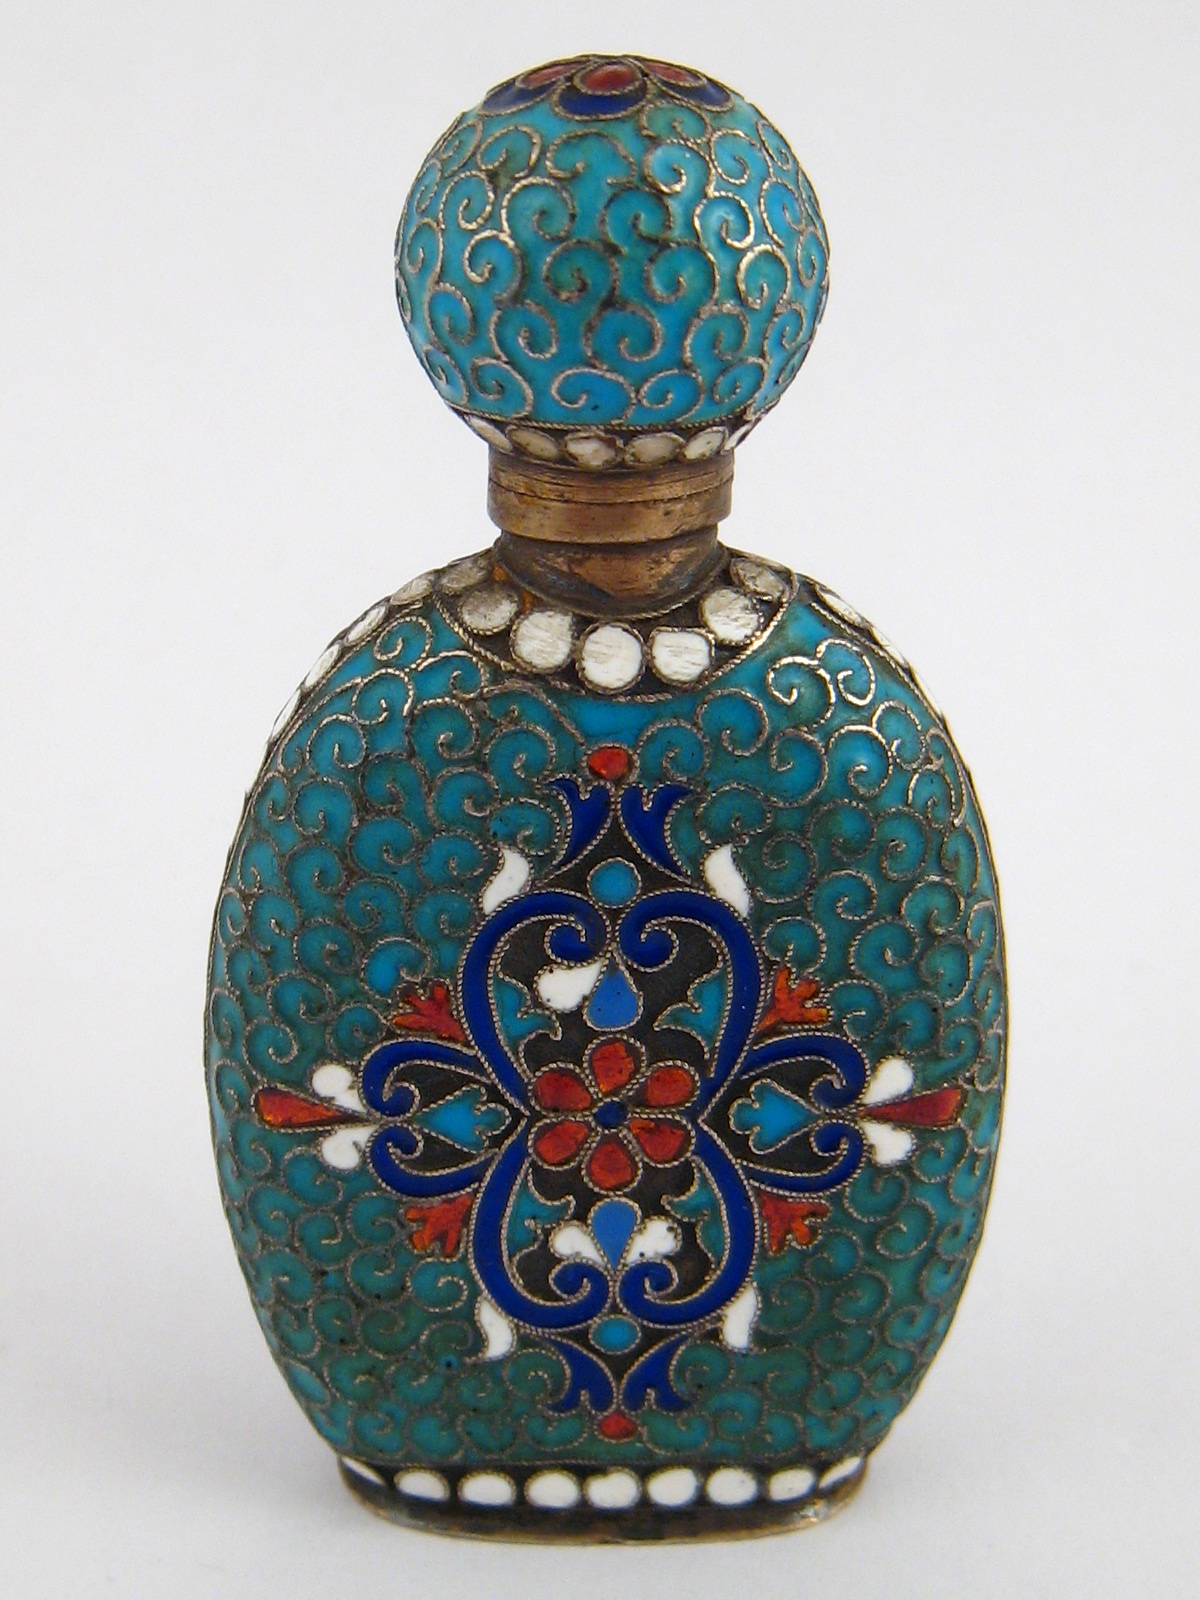 A Russian cloisonne enamelled silver gilt perfume bottle, maker Gustav Klingert, Moscow 1882-96.